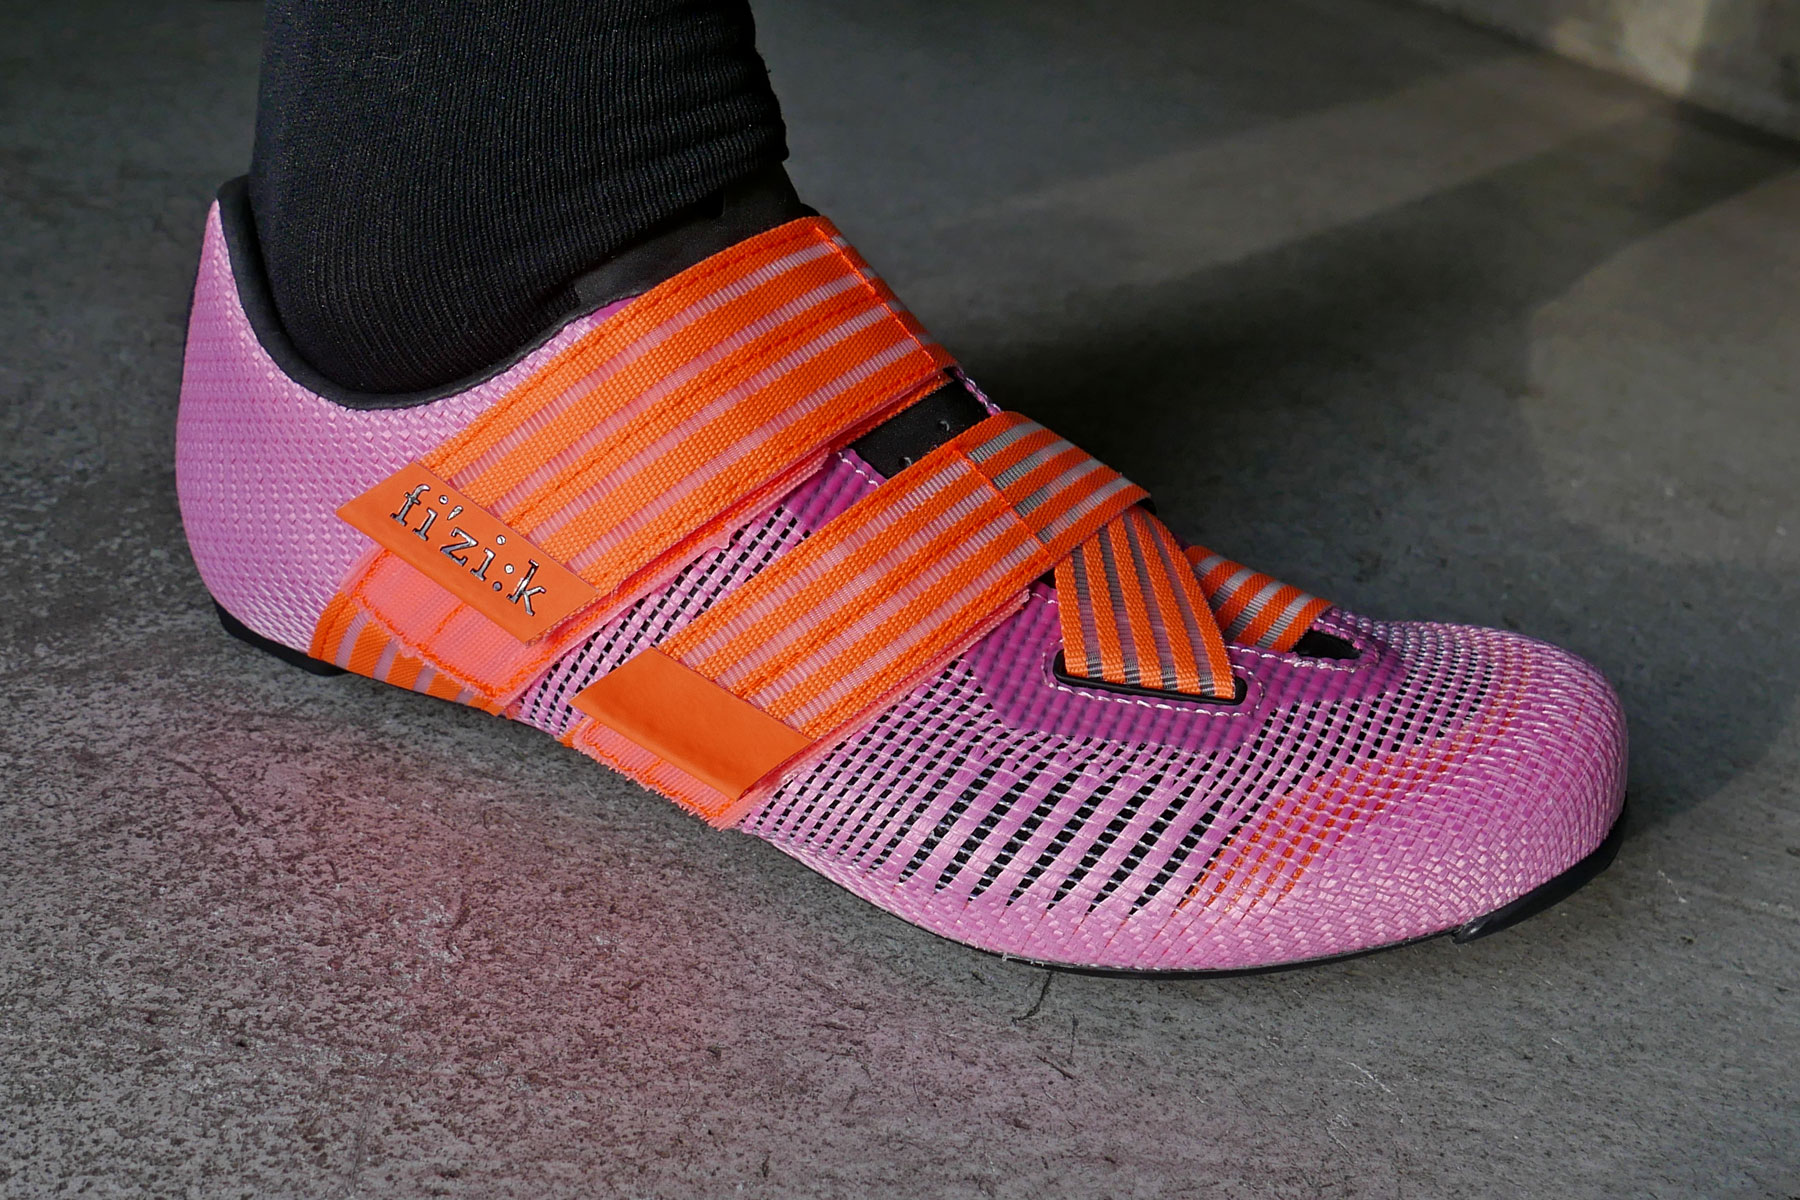 Fizik Powerstrap Aeroweave ultralight open mesh road bike race shoes, on foot with black sock